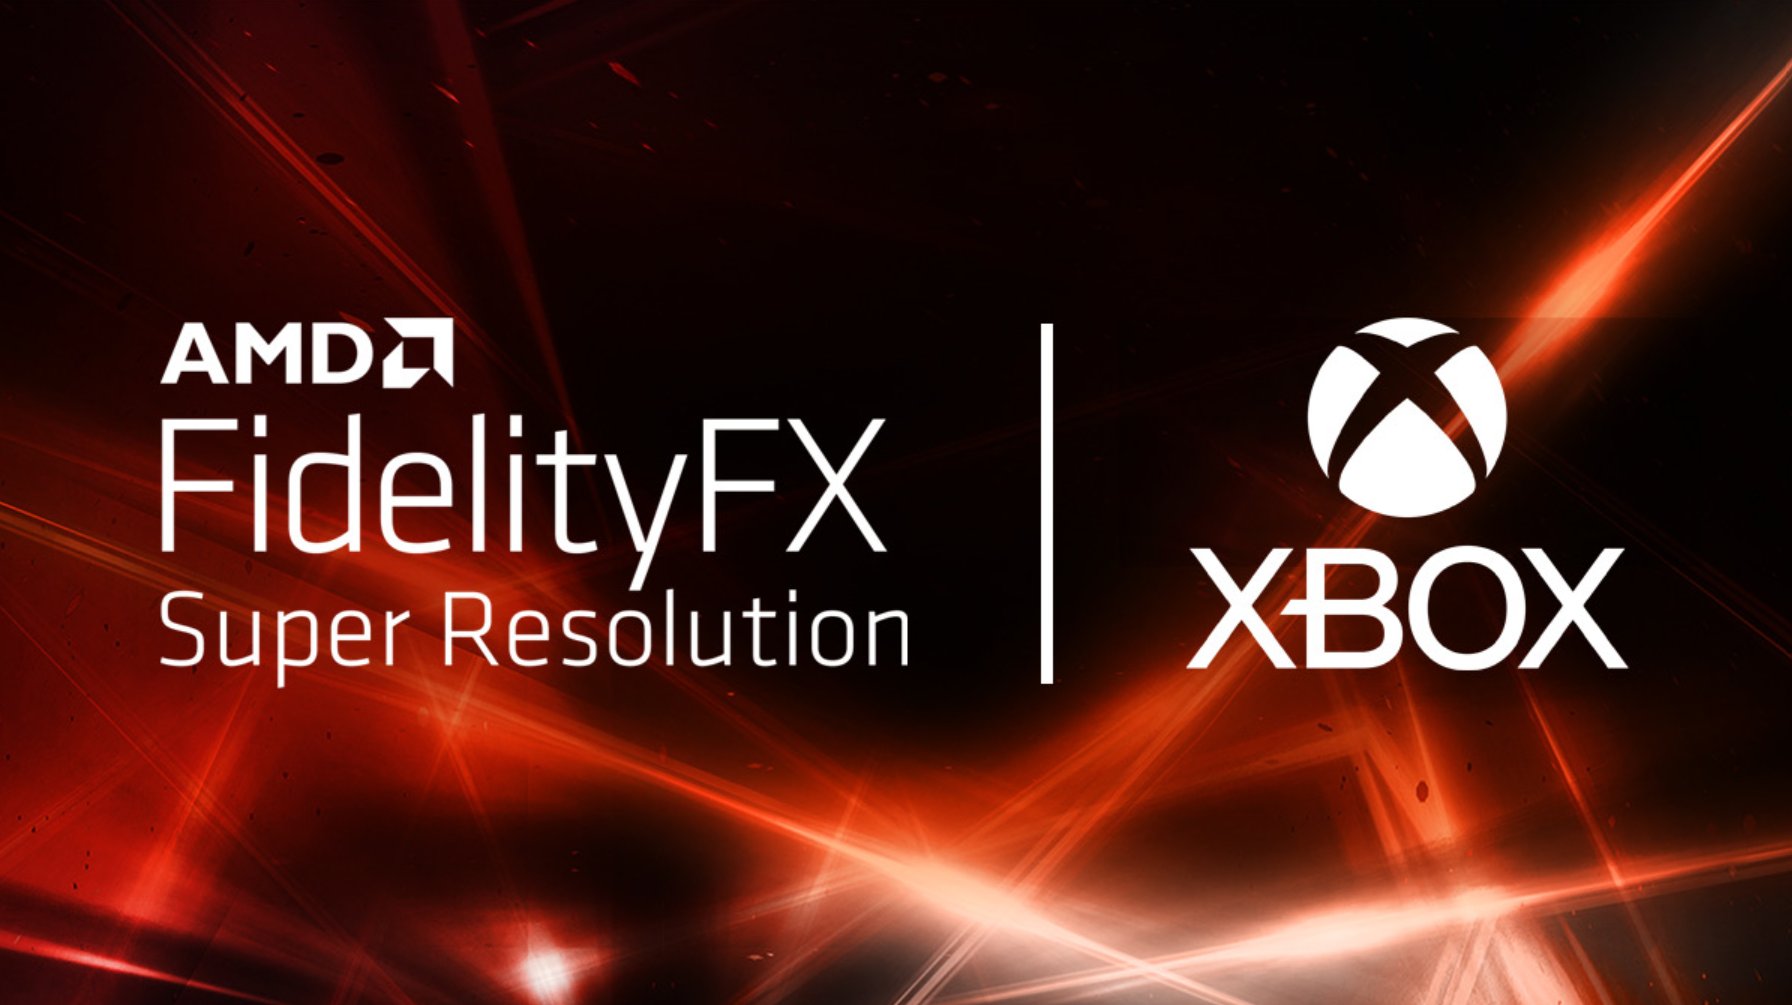 Immagine pubblicata in relazione al seguente contenuto: Microsoft: la tecnologia AMD FidelityFX Super Resolution (FSR) in arrivo su Xbox | Nome immagine: news32204_Xbox-FidelityFX-Super-Resolution_1.jpg